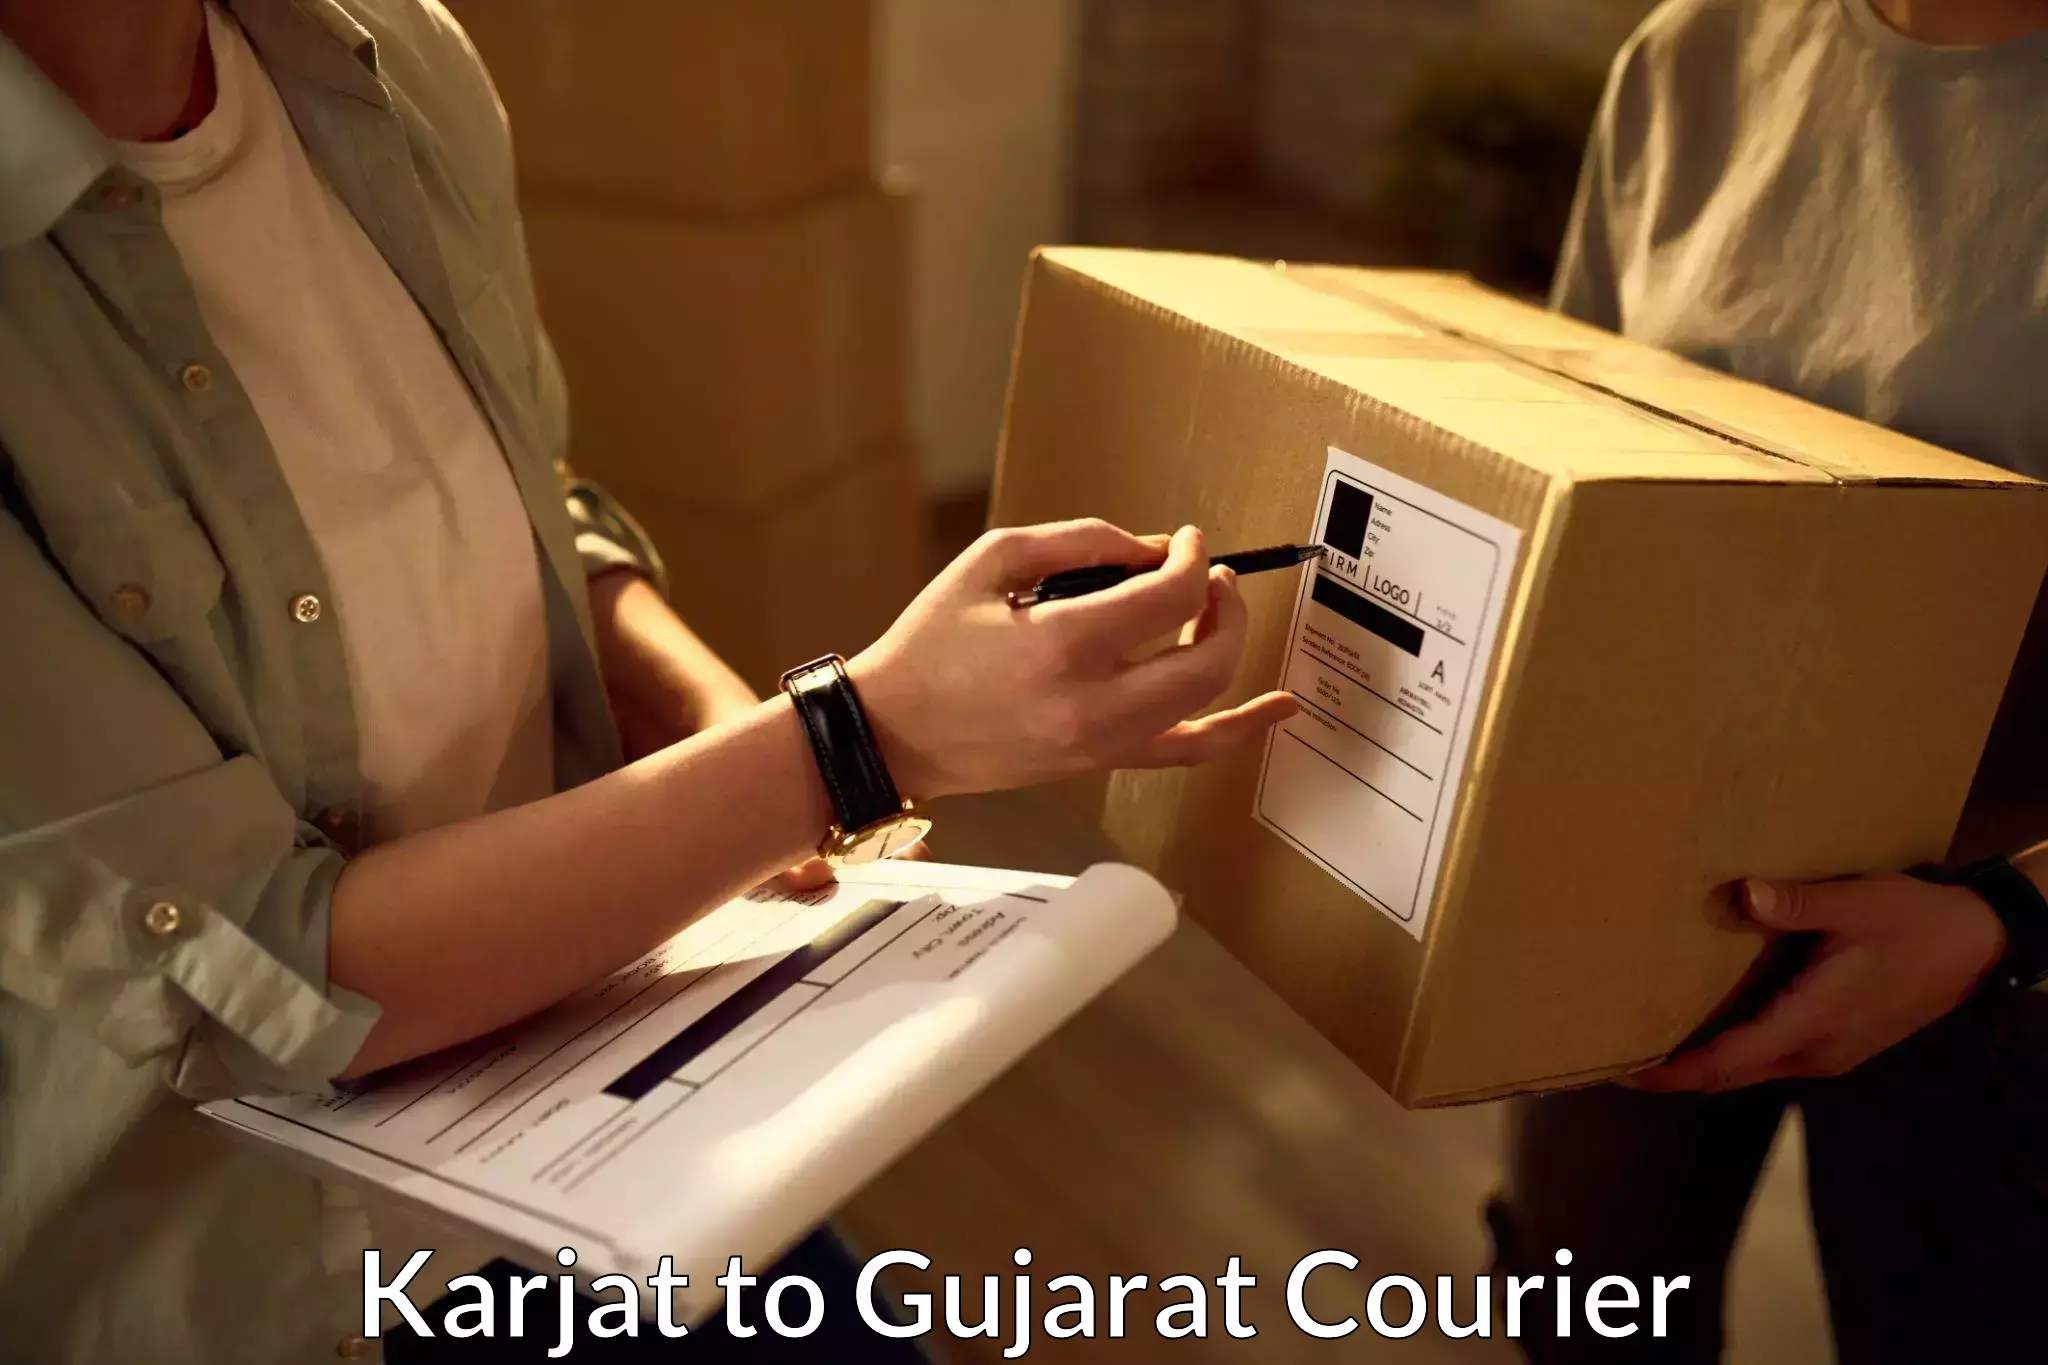 Nationwide shipping services Karjat to Kalol Gujarat